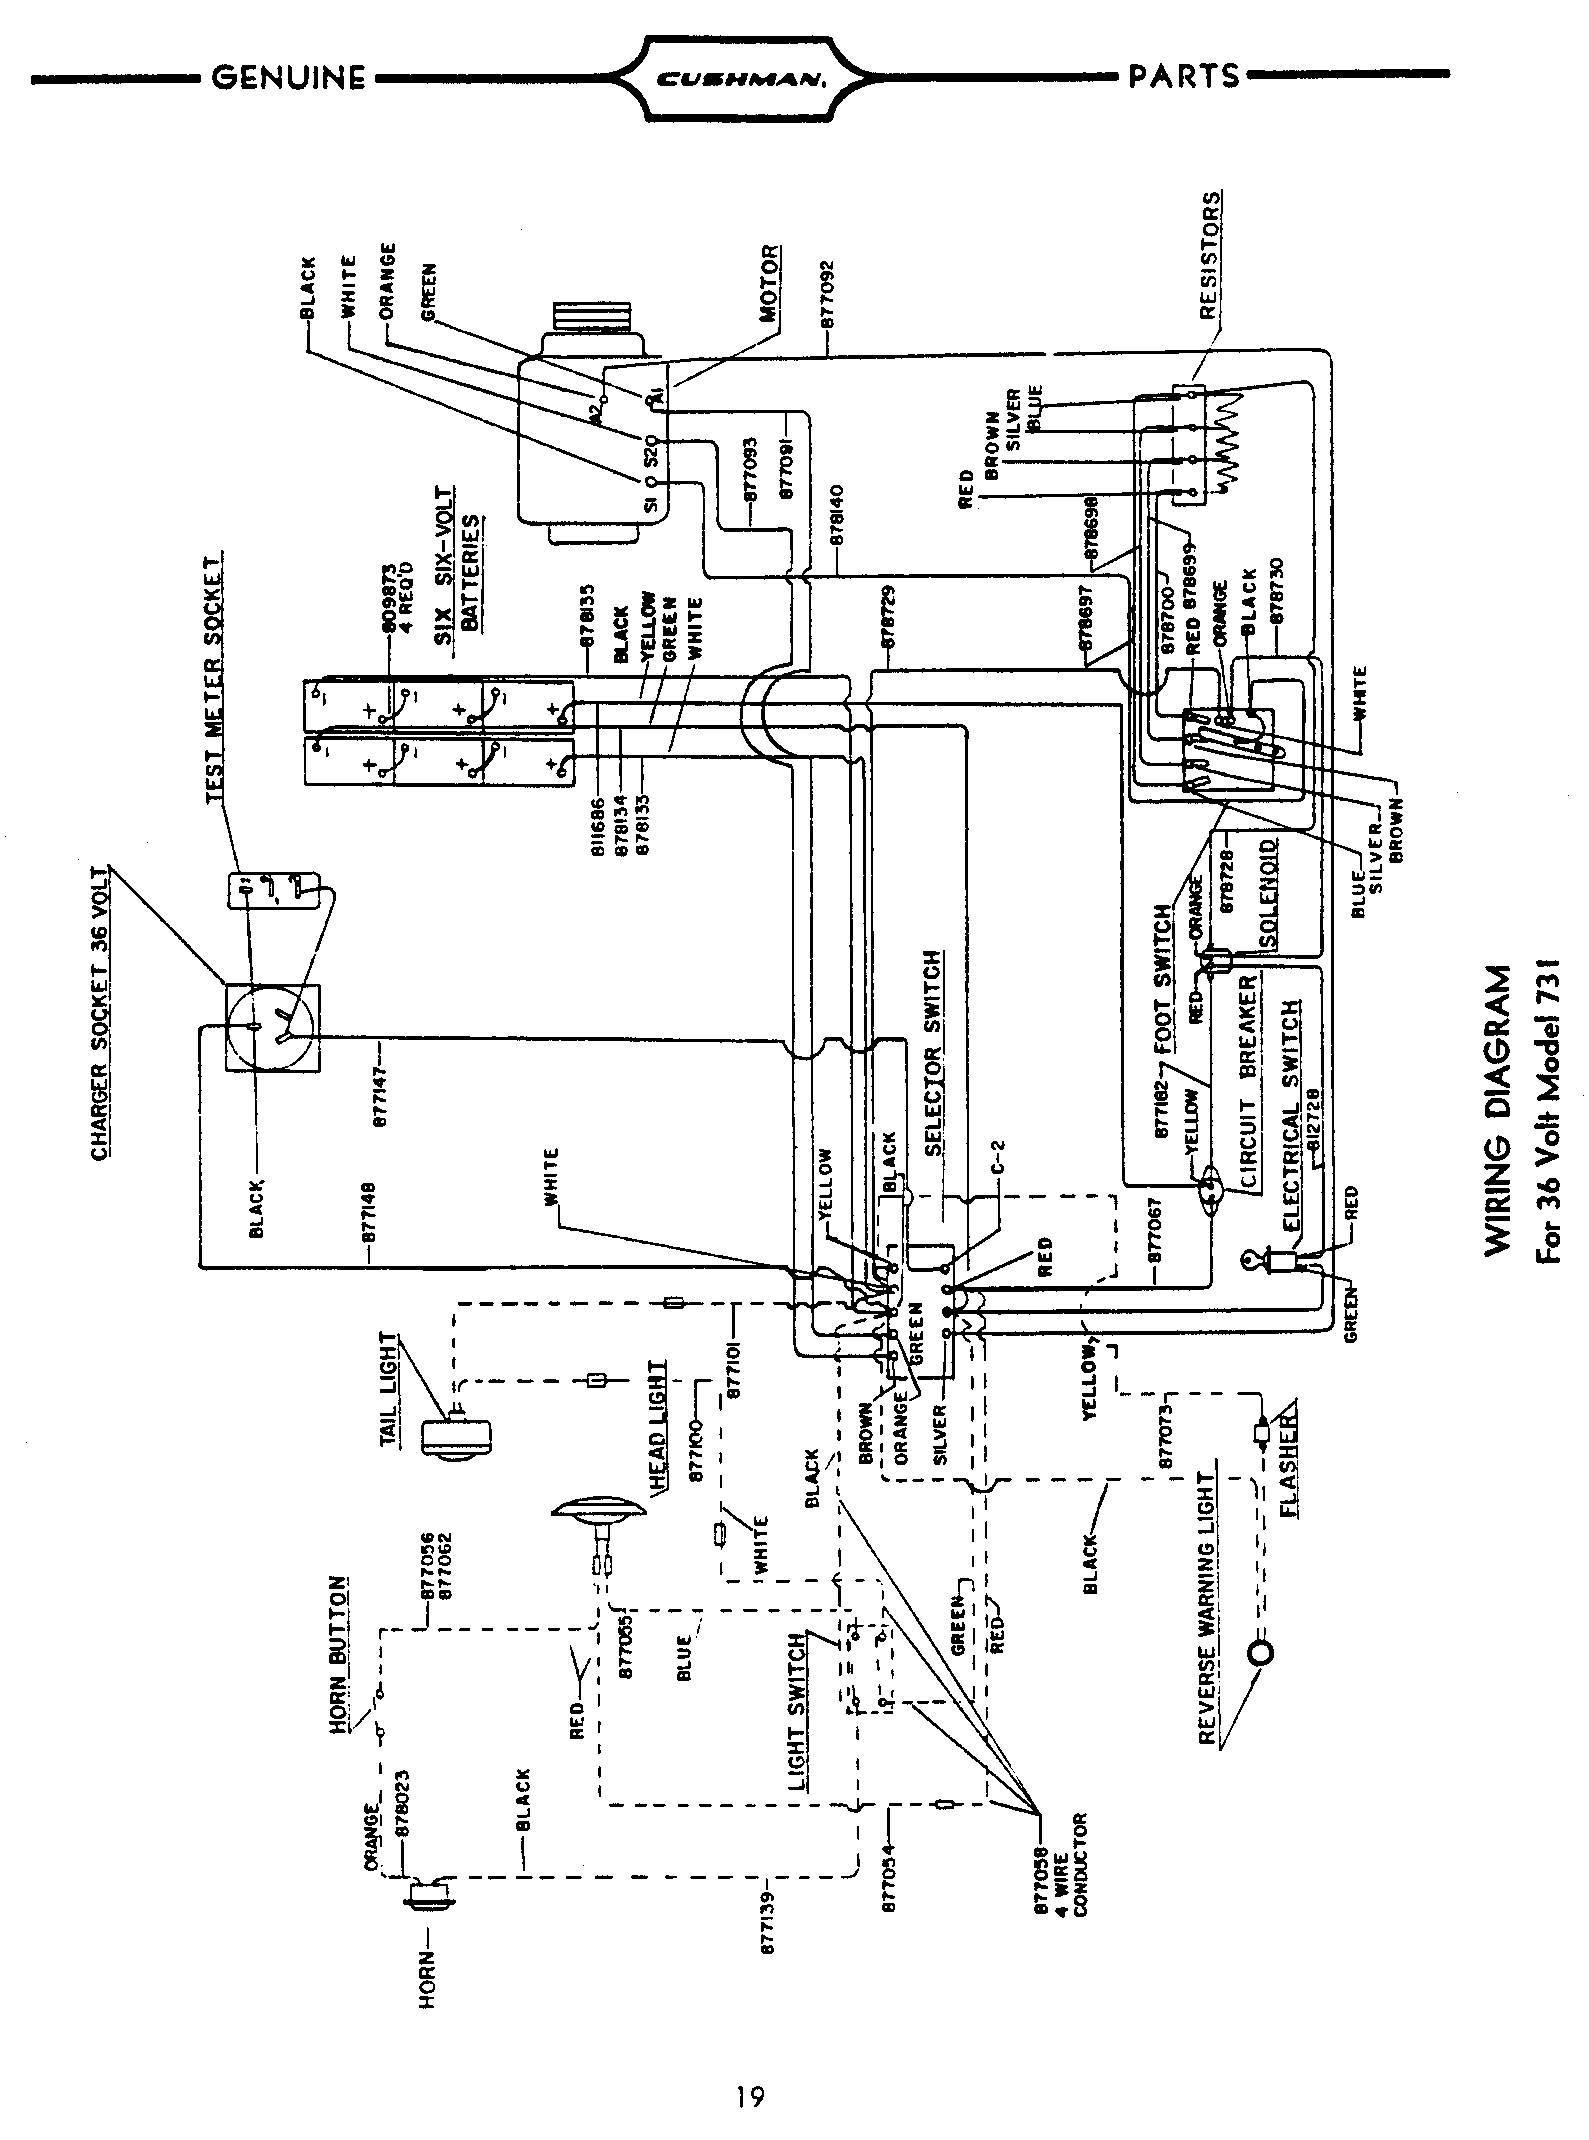 Wireing Diagram for 1988 Club Car Ds 6087] 36 Volt Club Car Wiring Diagram Schematic Of Wireing Diagram for 1988 Club Car